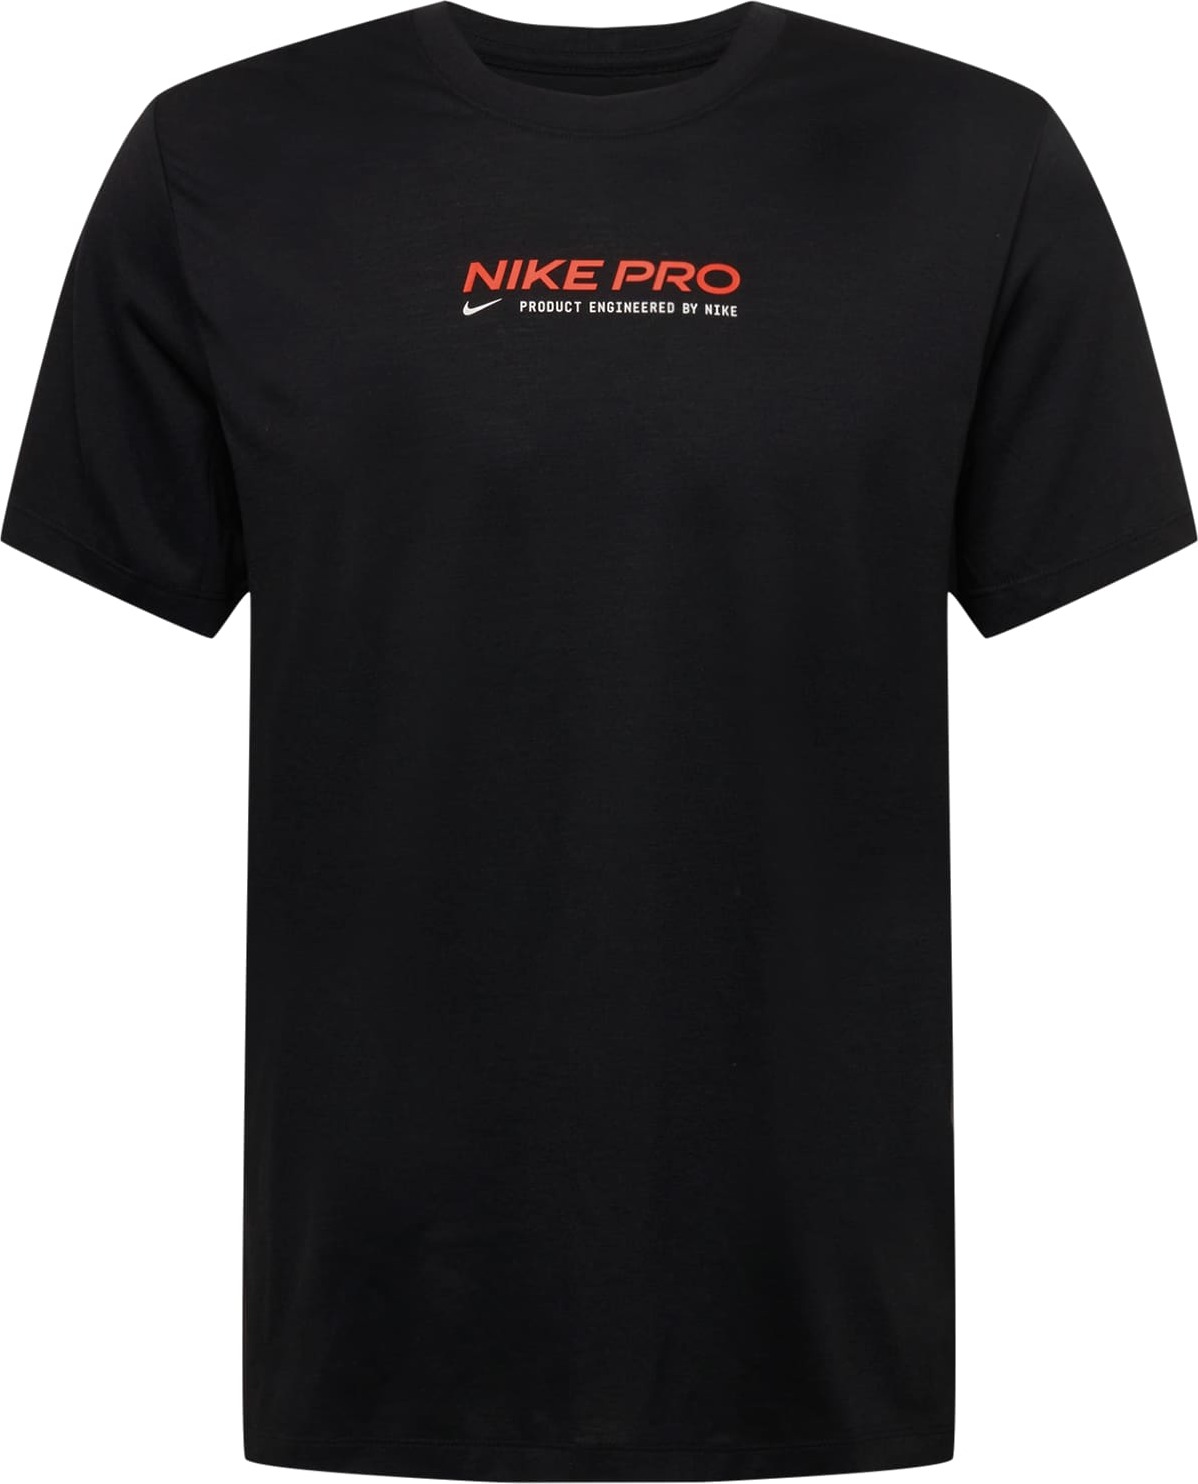 Funkční tričko Nike jablko / ohnivá červená / černá / bílá